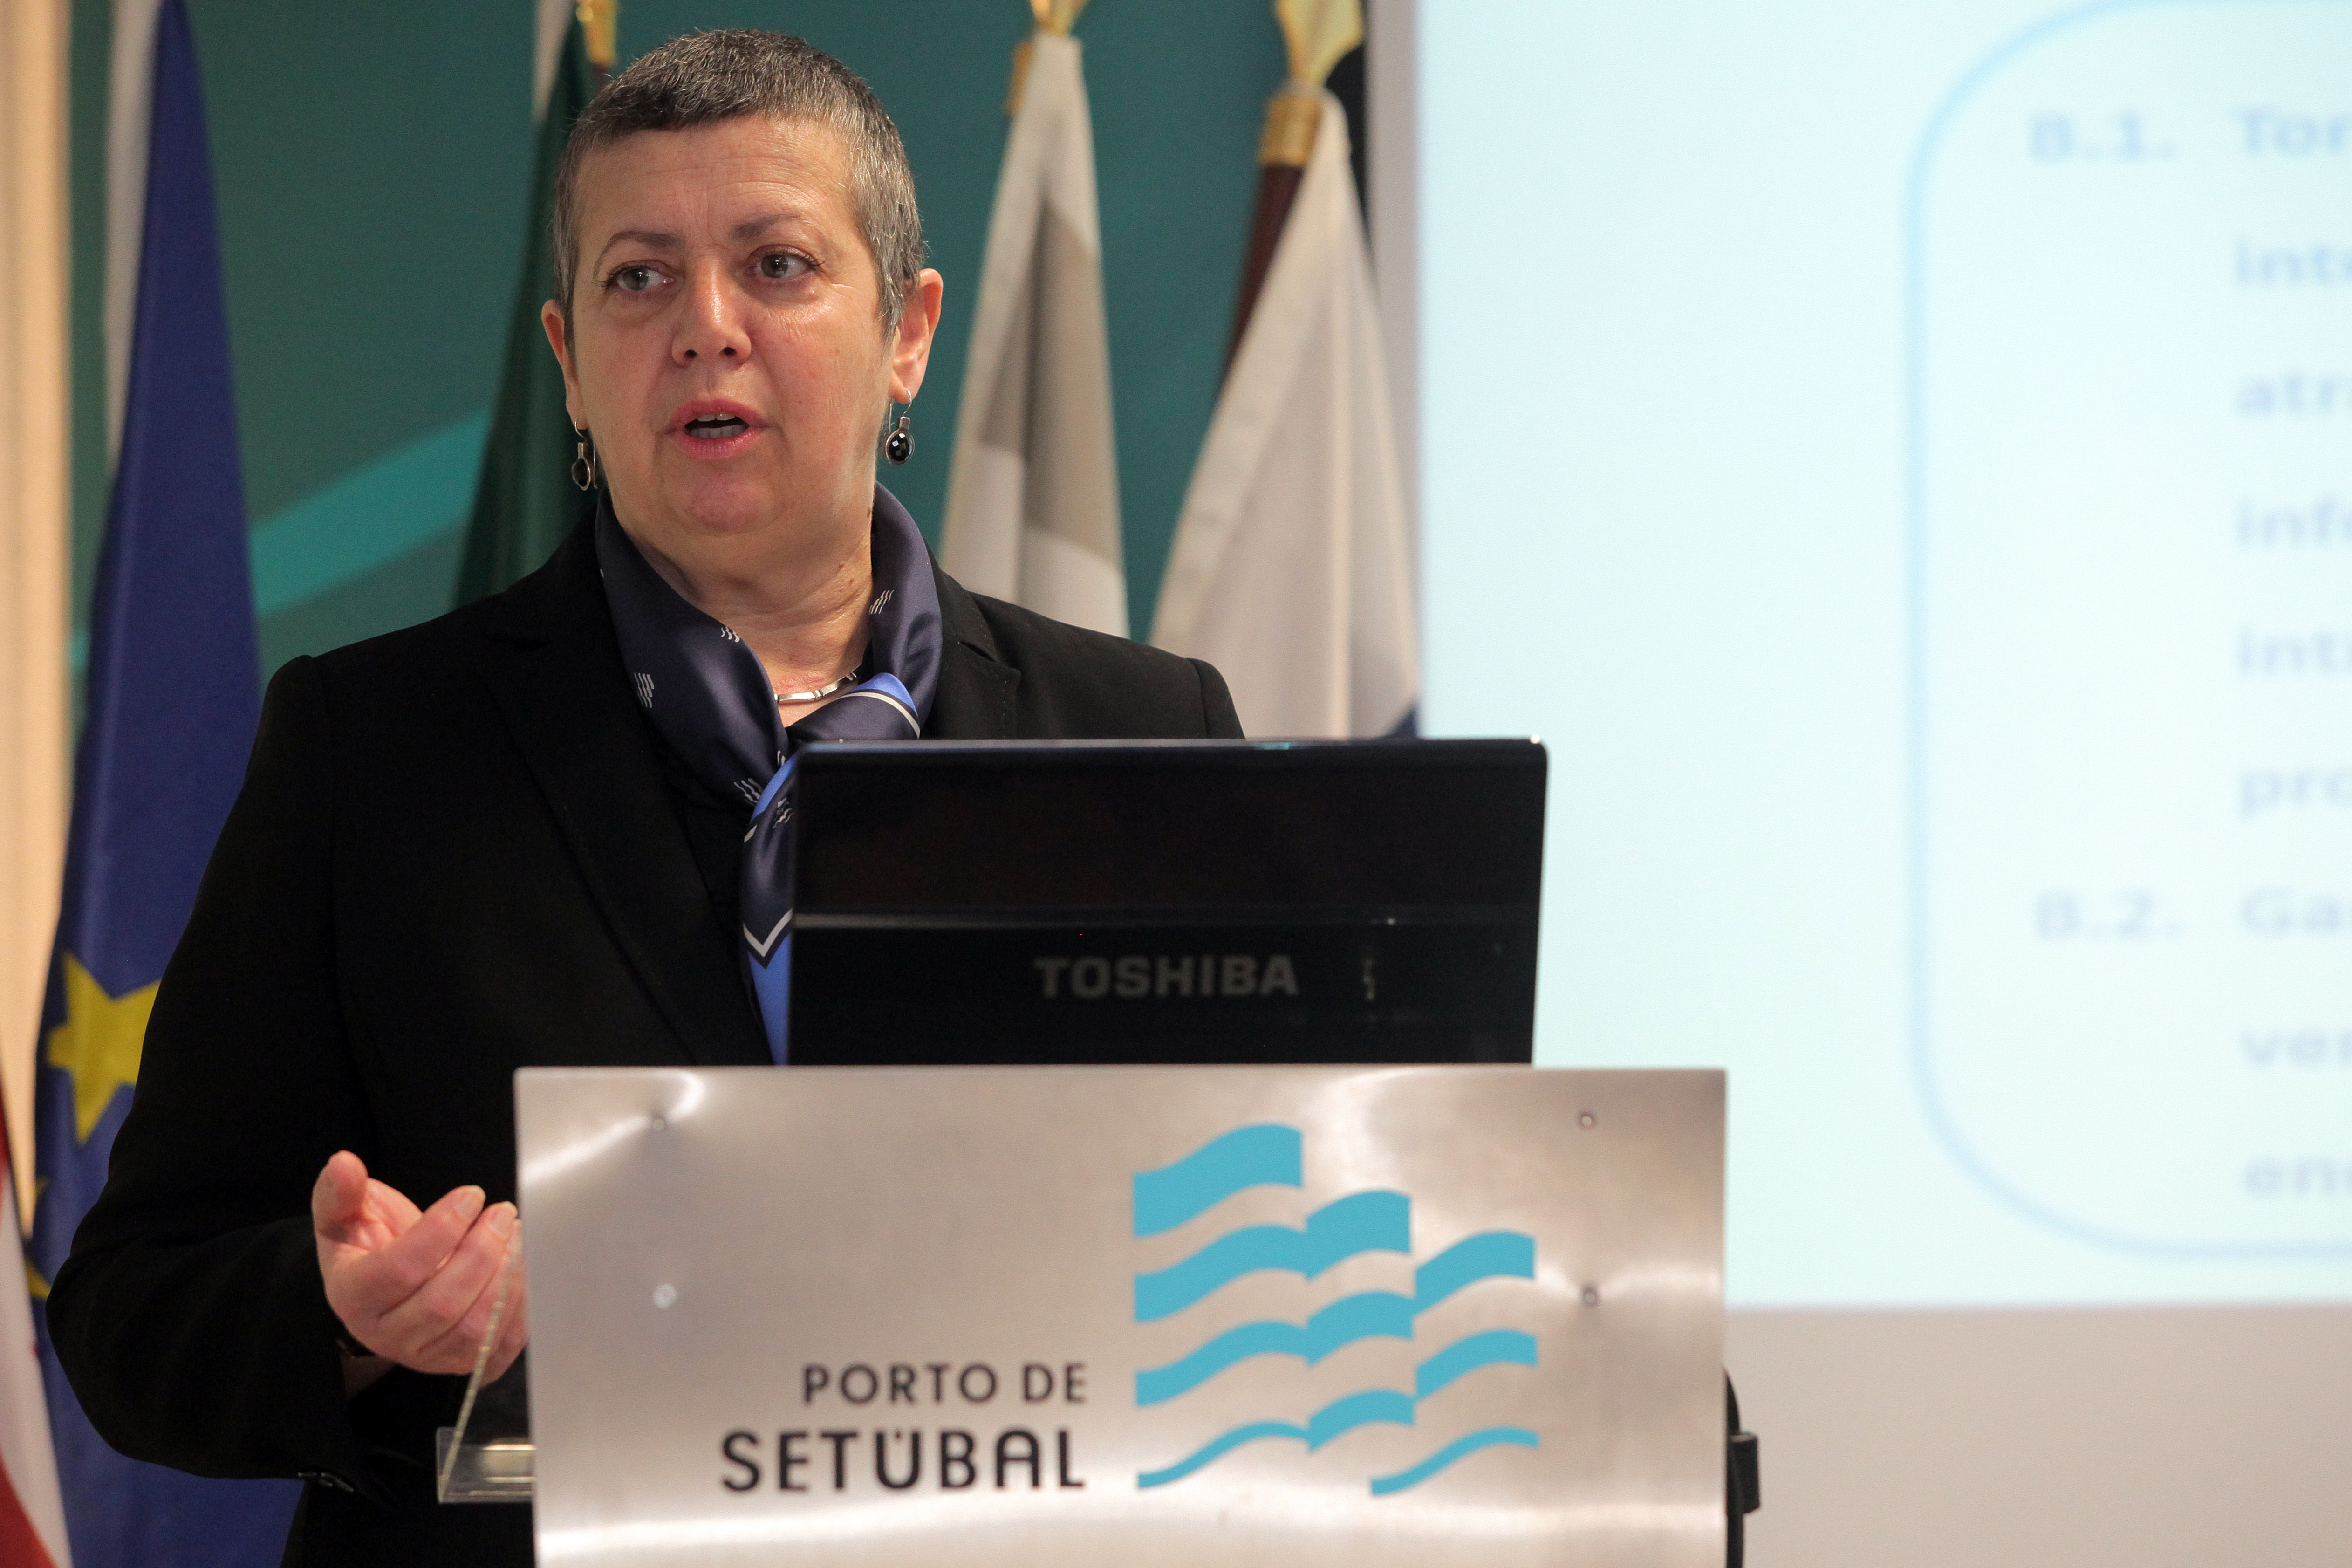 Ministra do Mar apresentou “Estratégia para o aumento da Competitividade Portuária 2017/2026” para o Porto de Setúbal